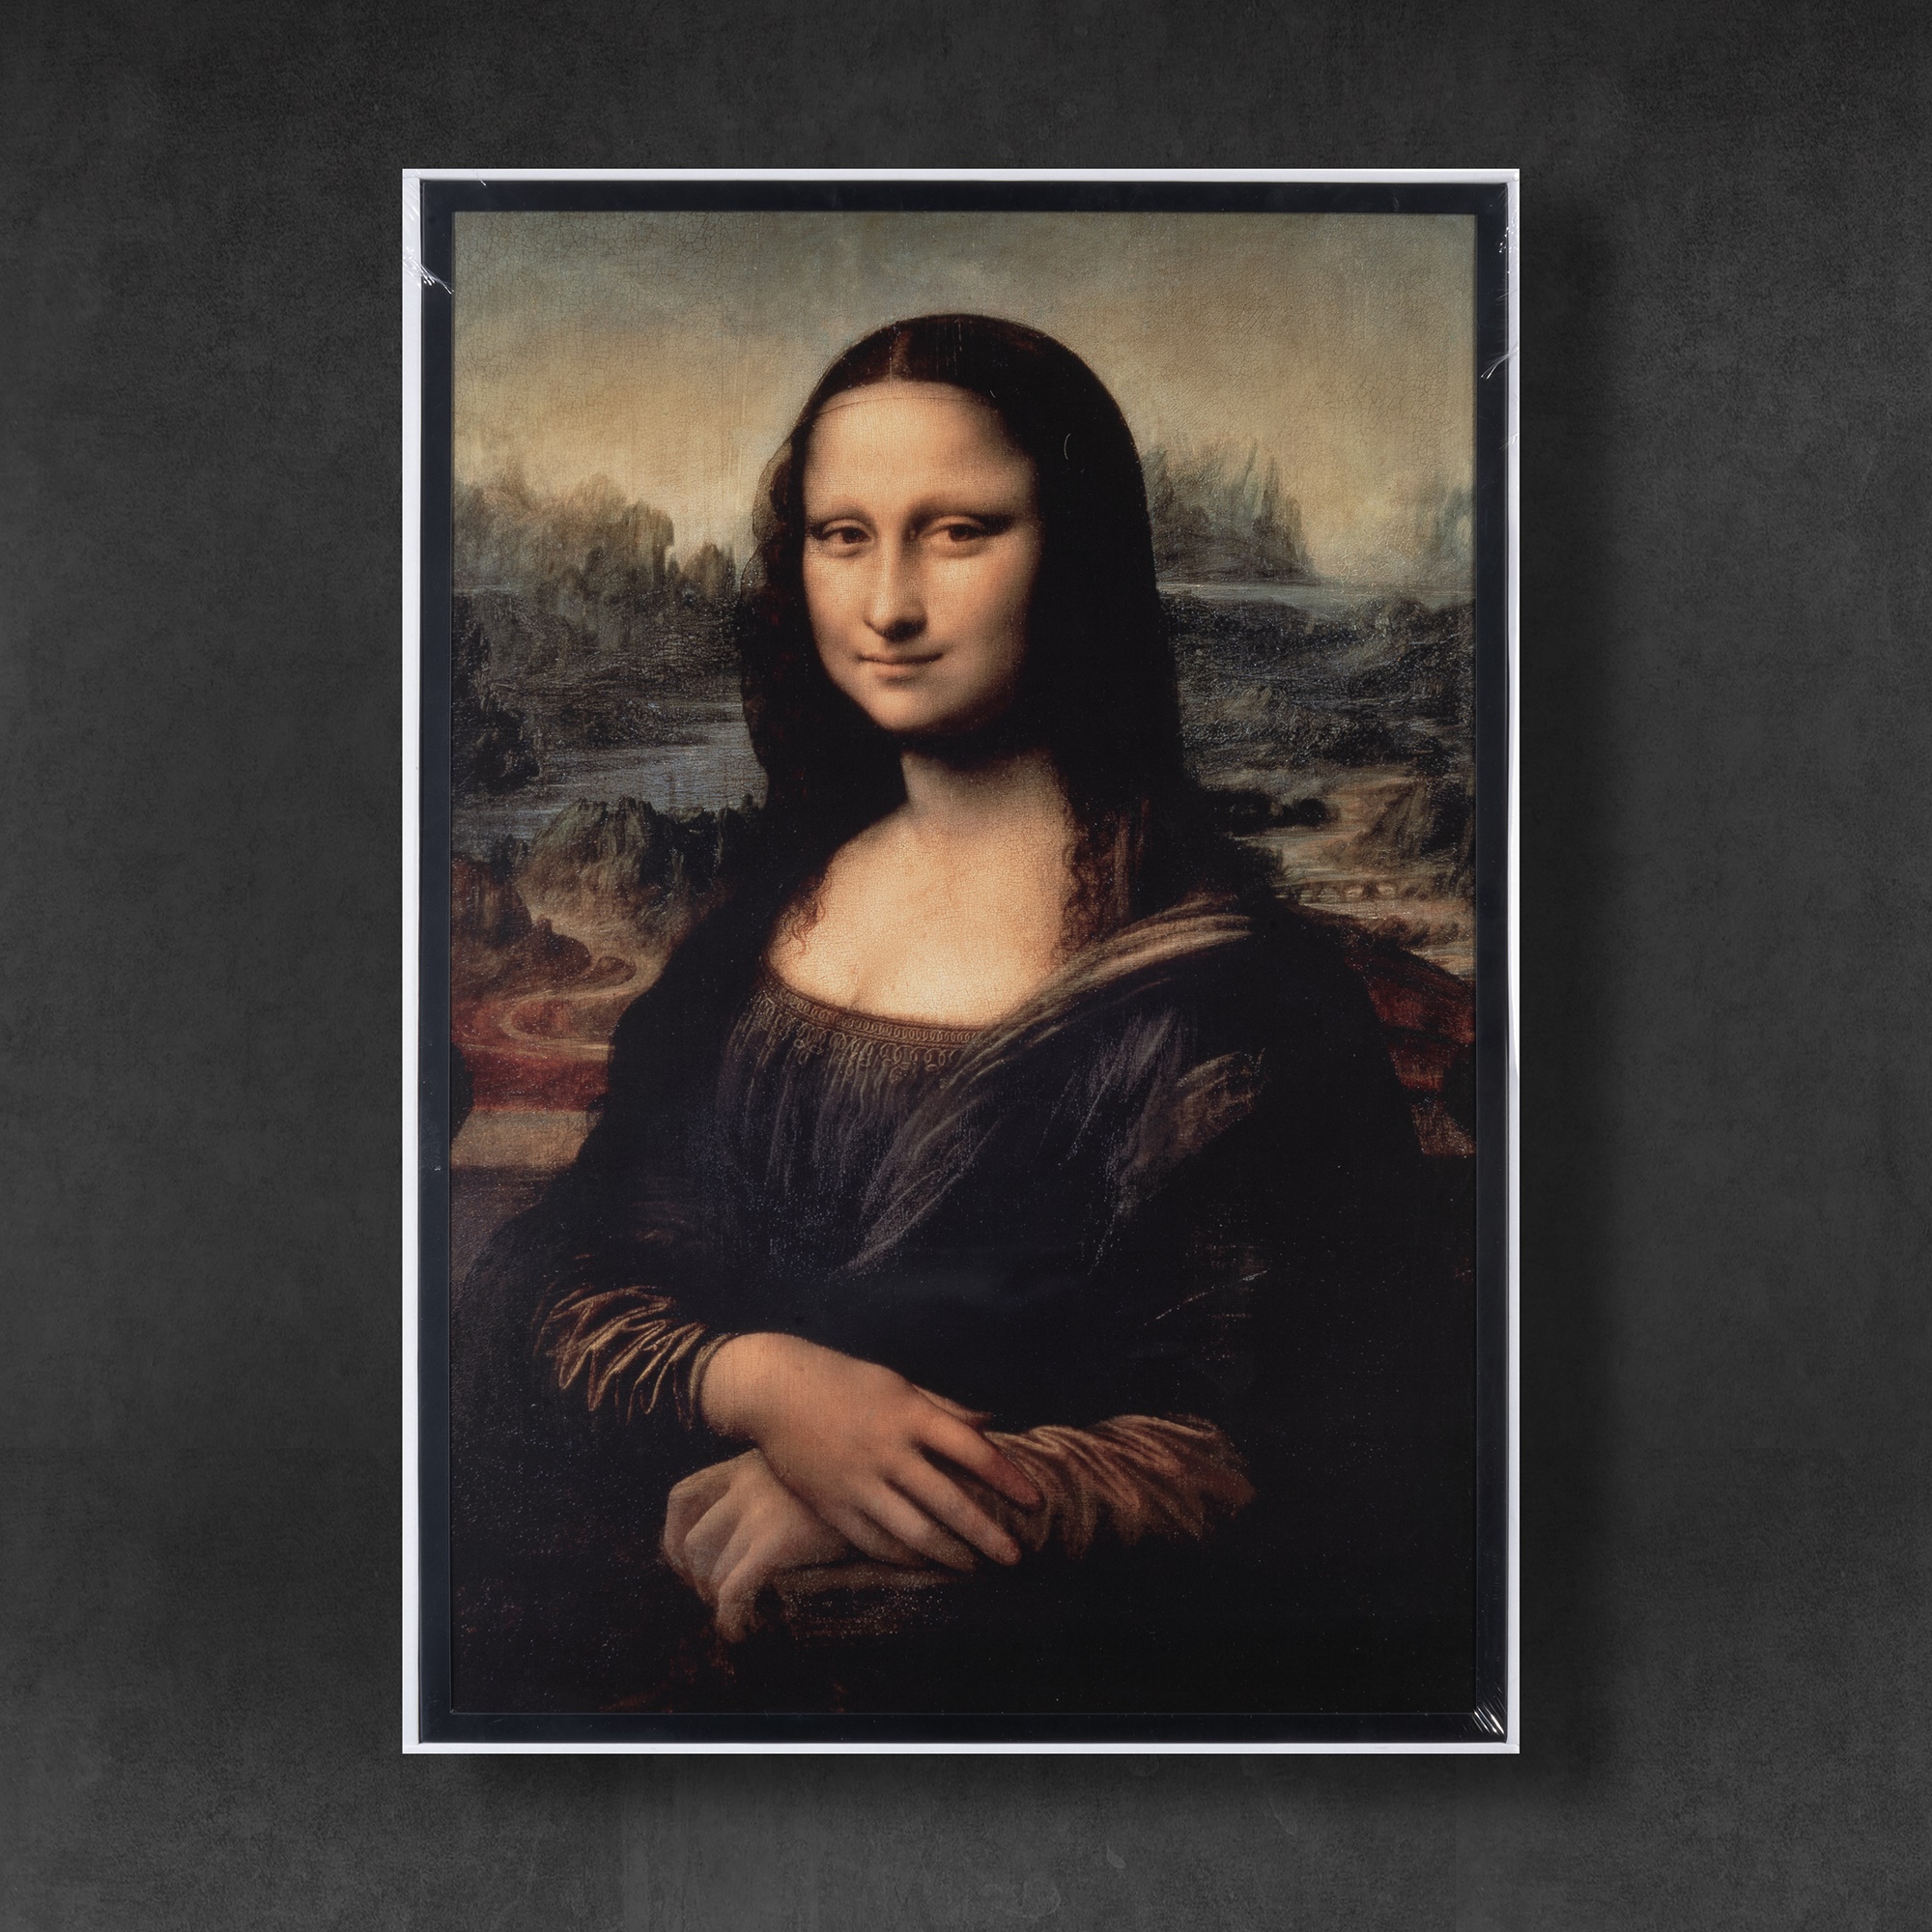 Lot 66 - Virgil Abloh x Ikea, 'Mona Lisa', 2018